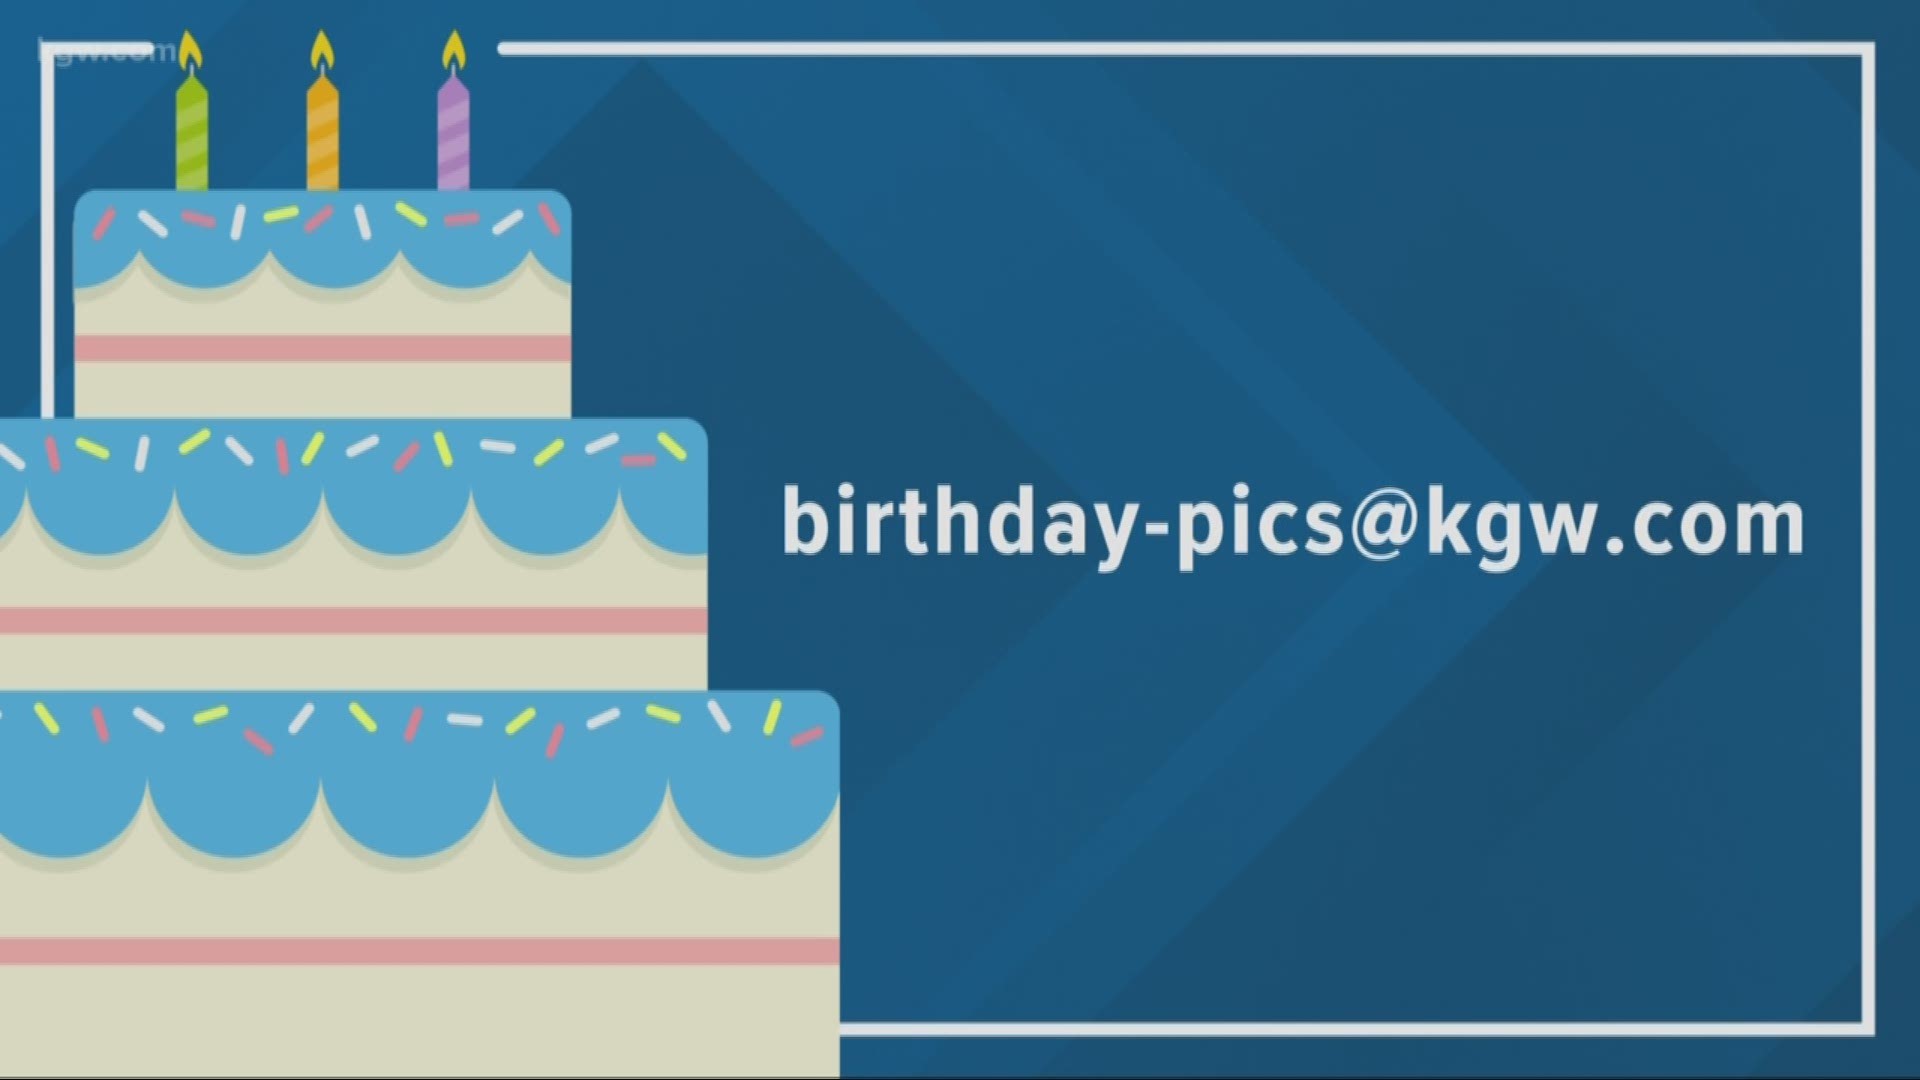 KGW viewer birthdays: 10-9-19